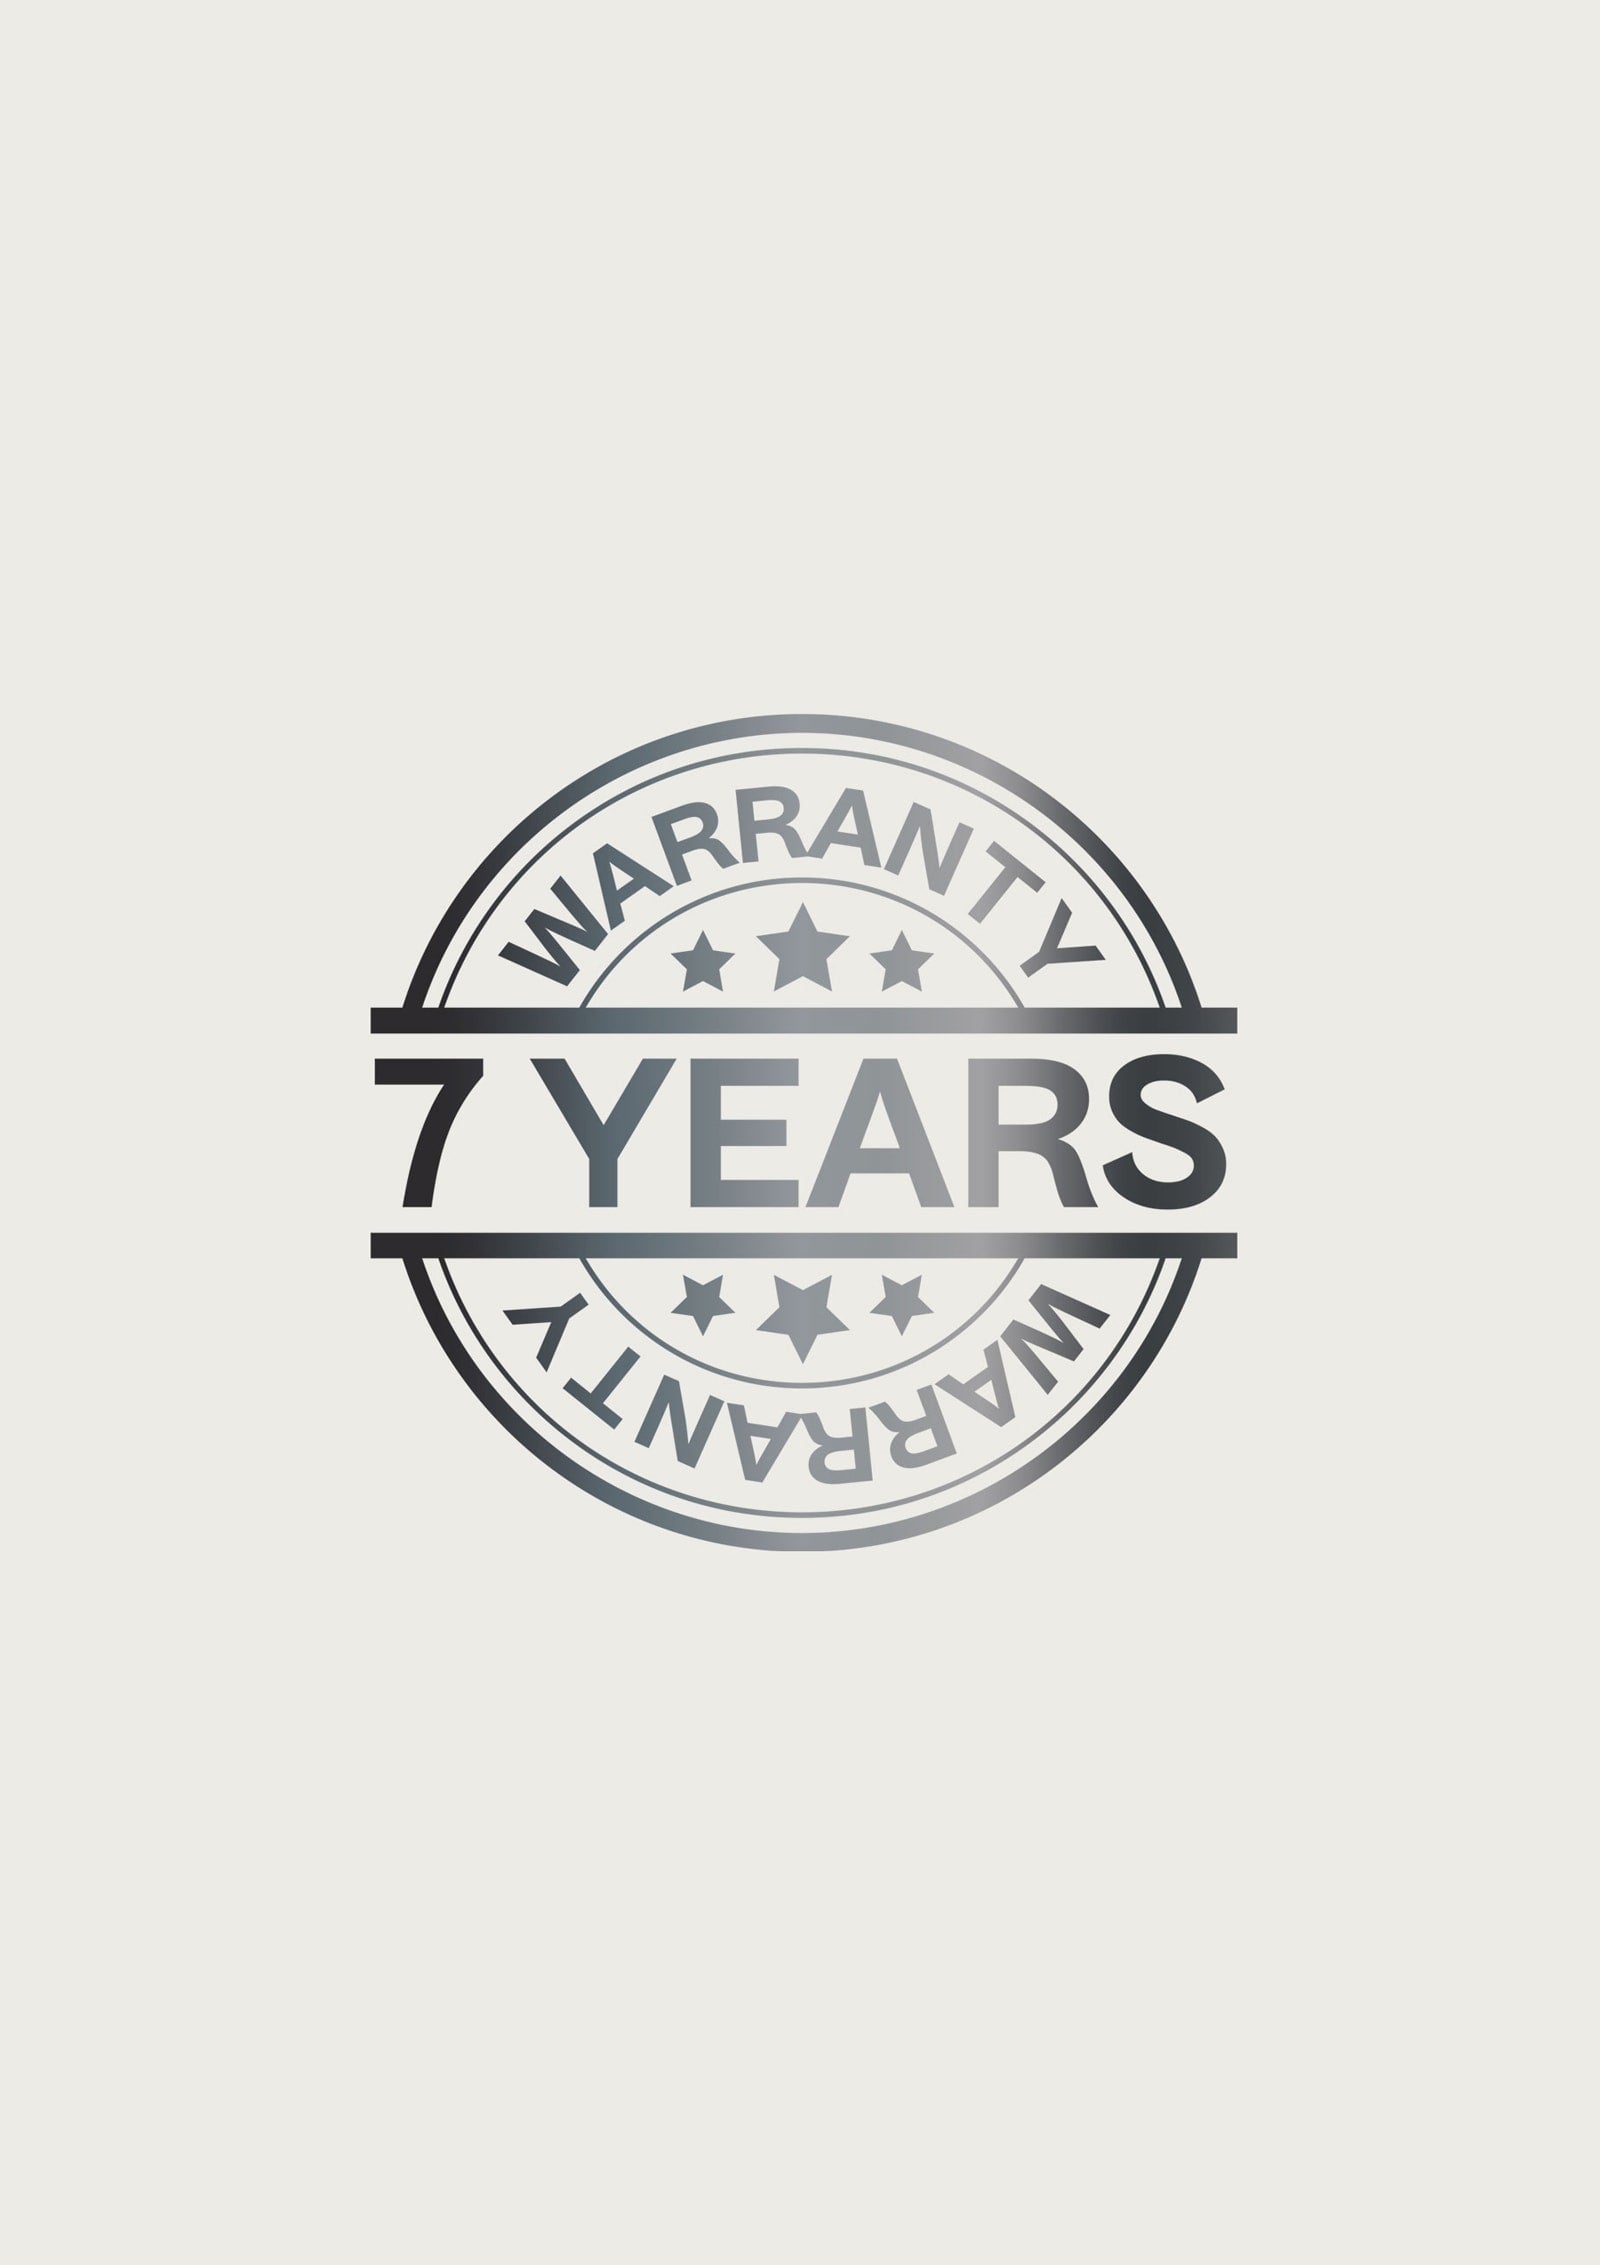 7 Years Extended Warranty Bathmatedirect1 